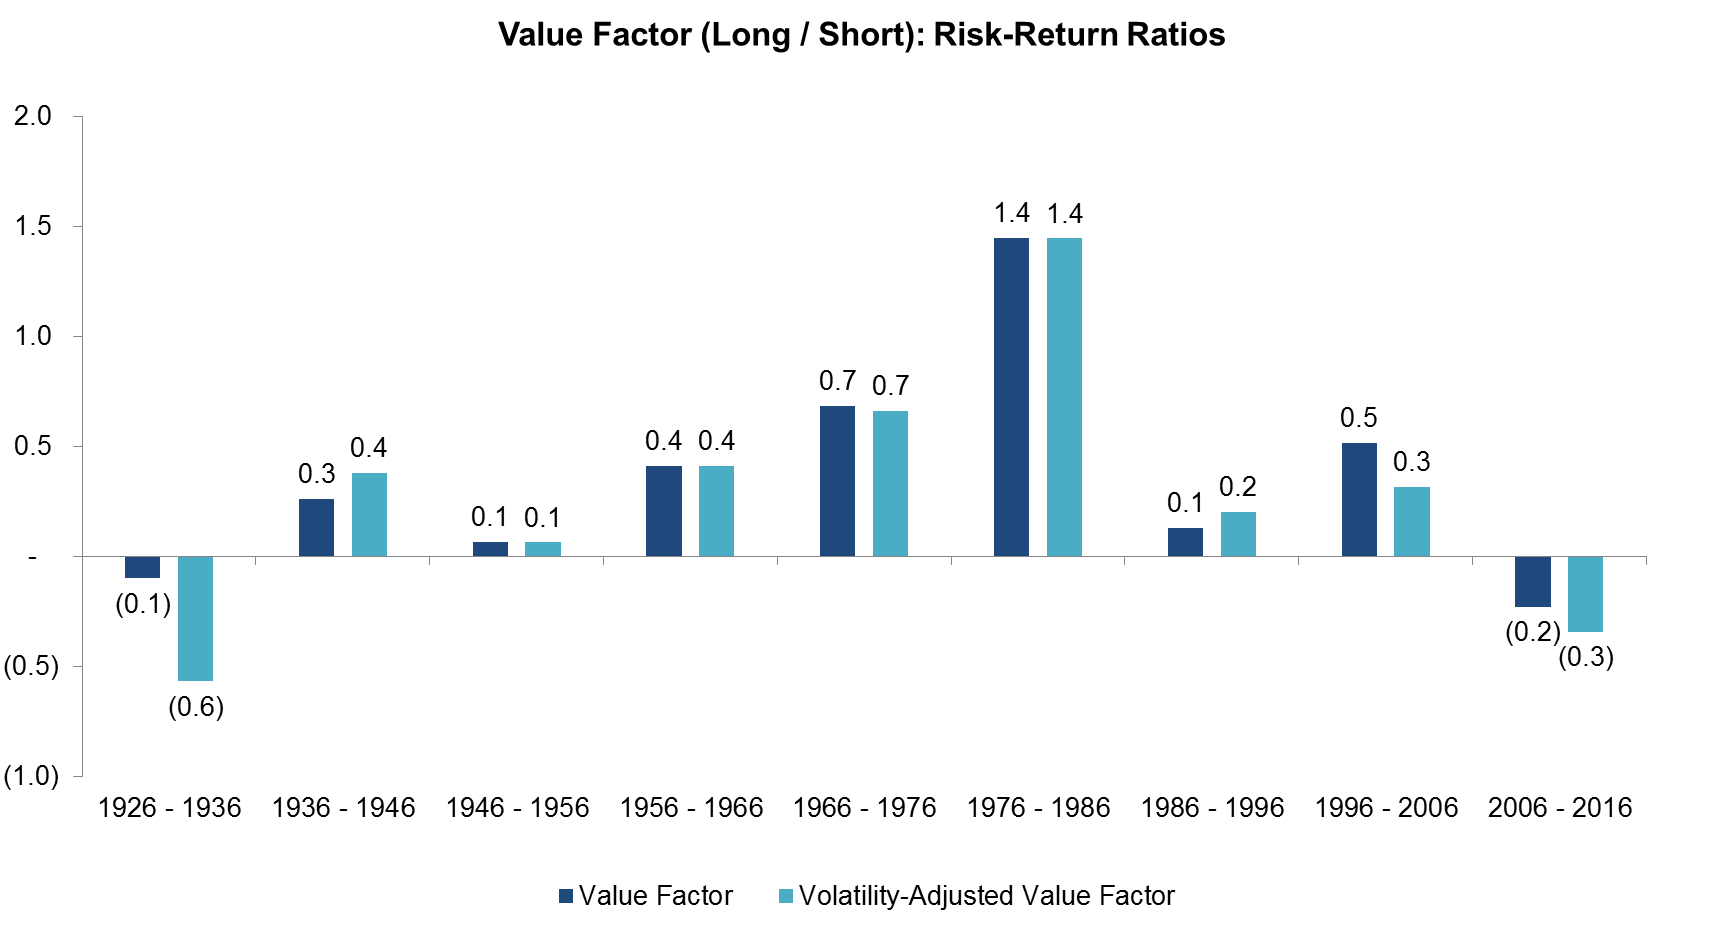 Value Factor (Long Short) Risk-Return Ratios